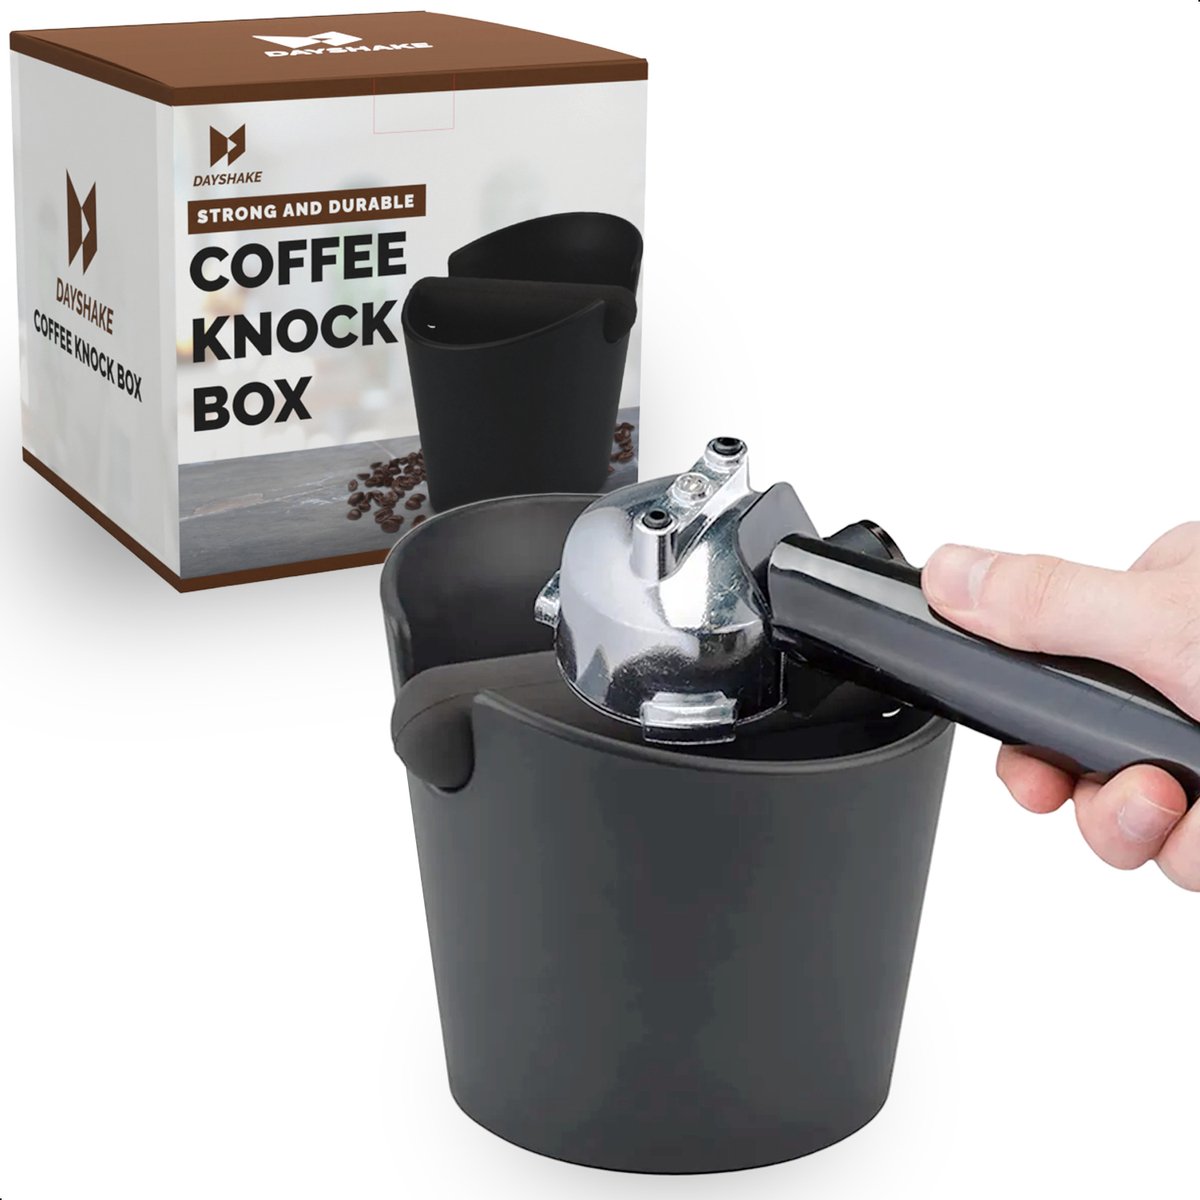 Dayshake Uitklopbak Koffie – Knockbox – Afklopbak – Uitkloplade – Barista – Espresso – Koffiemachine – Accessoires – Accesoires